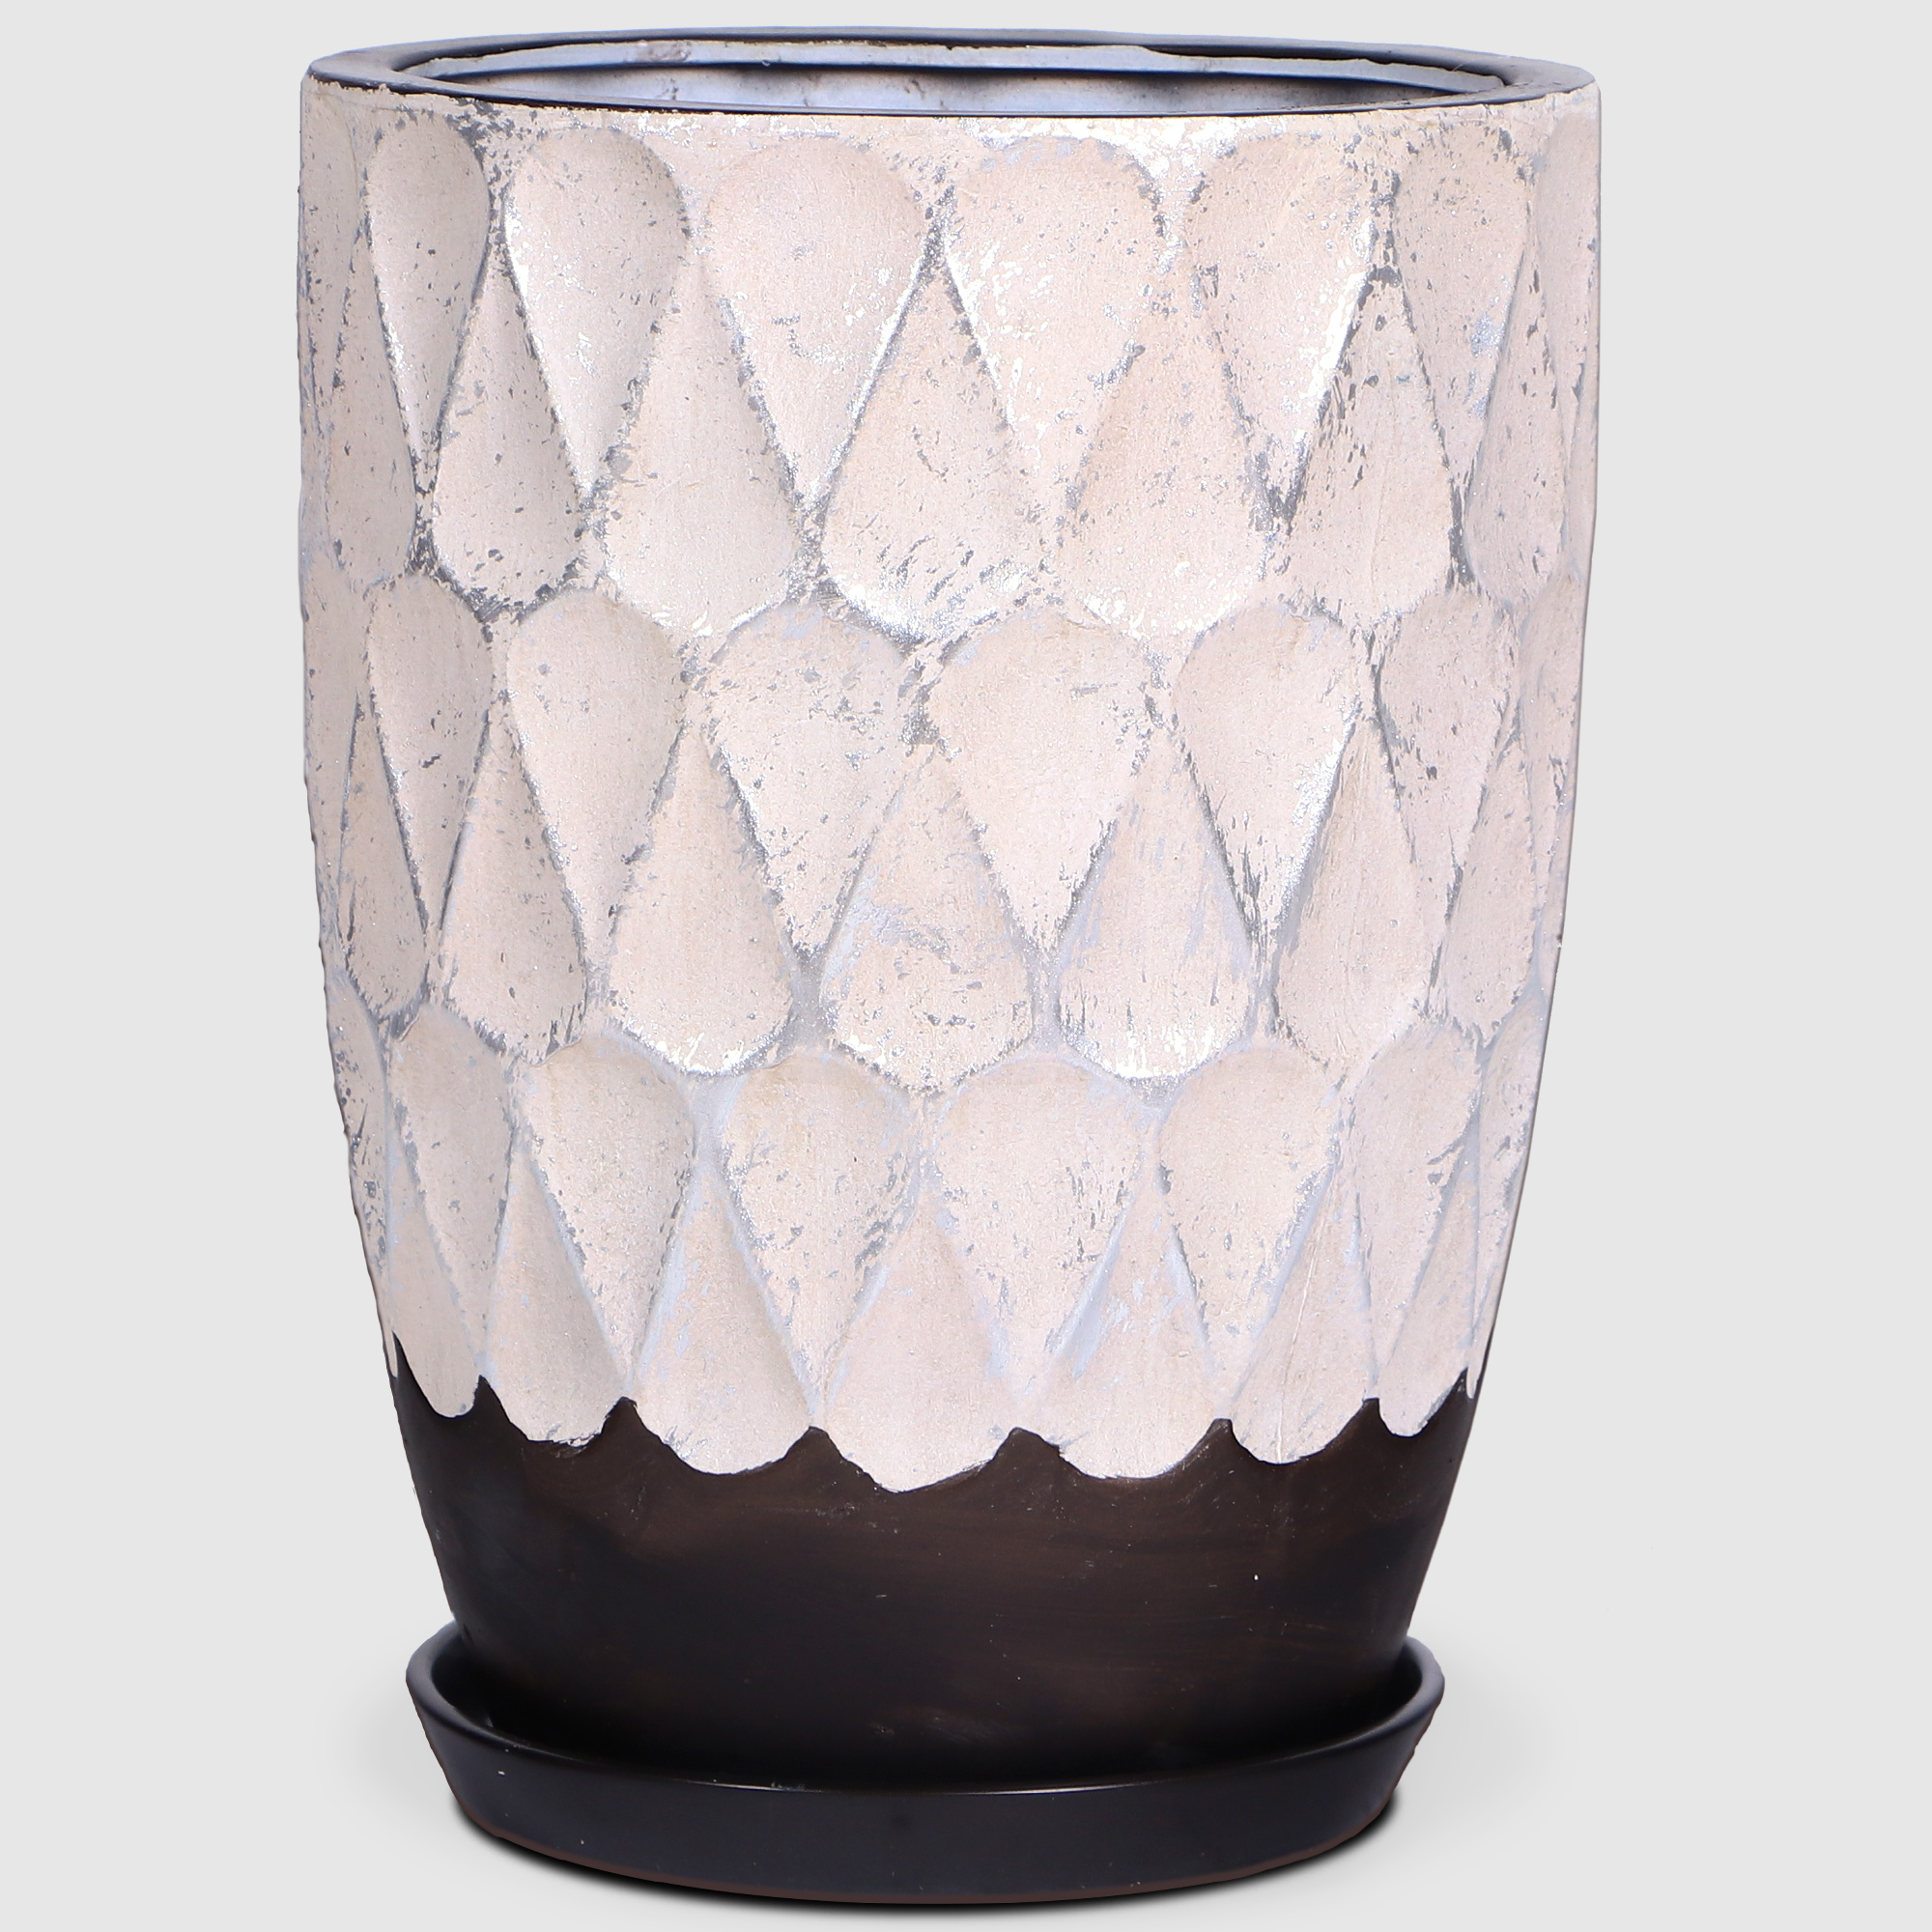 Горшок керамический Qianjin для цветов бежевый/серебристый 26 см с поддоном